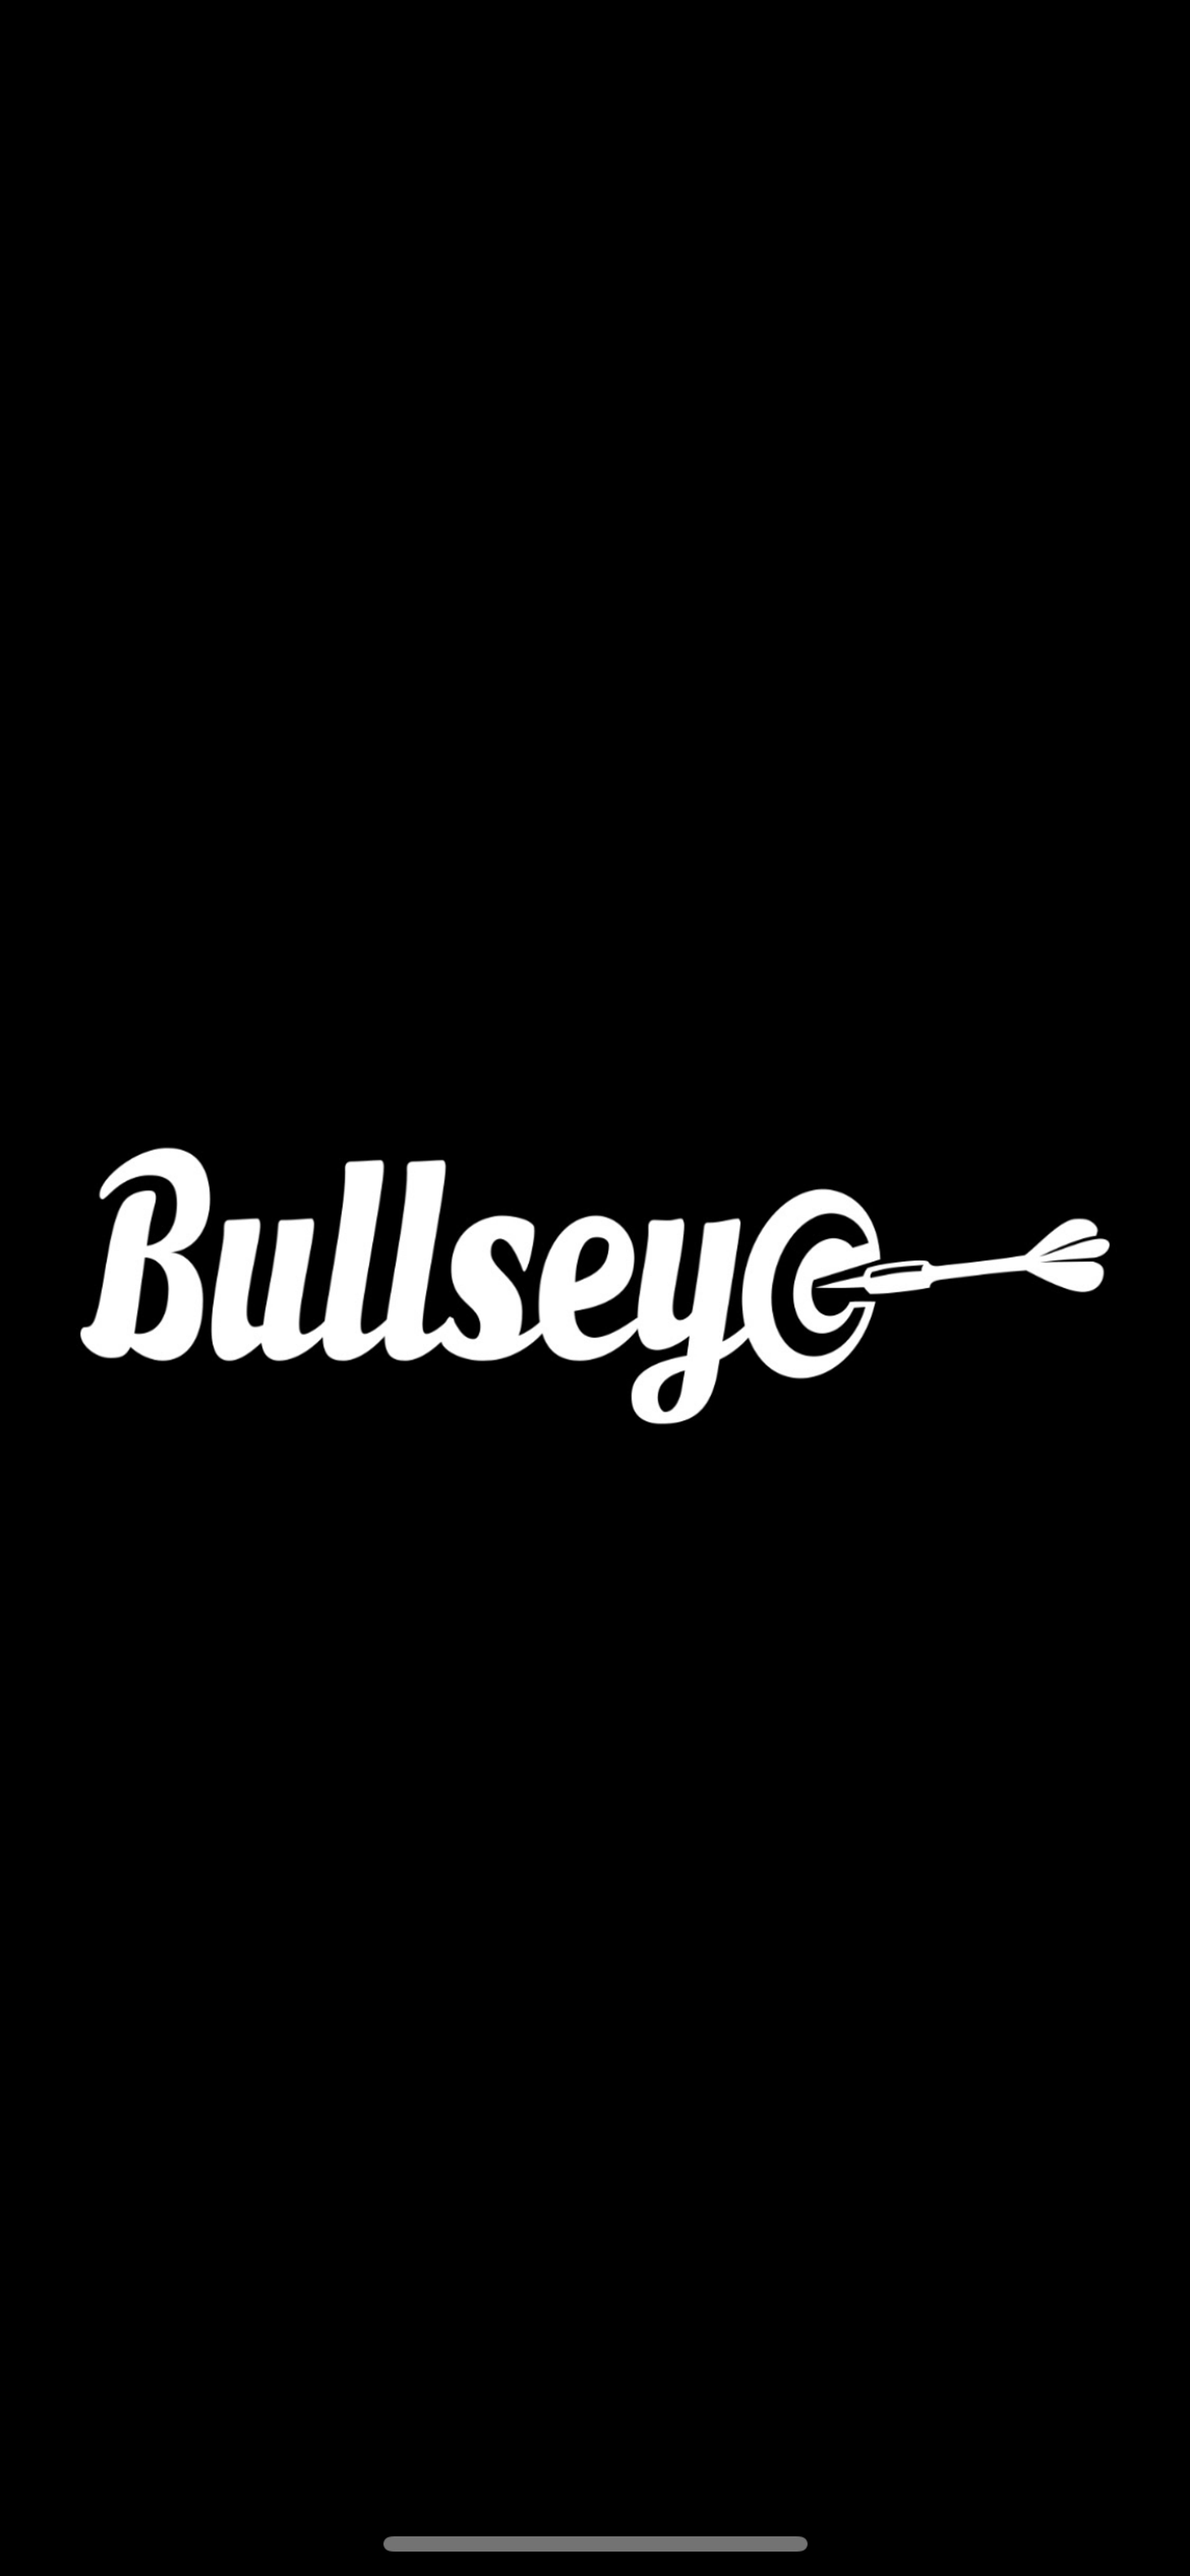 Bullseyesb